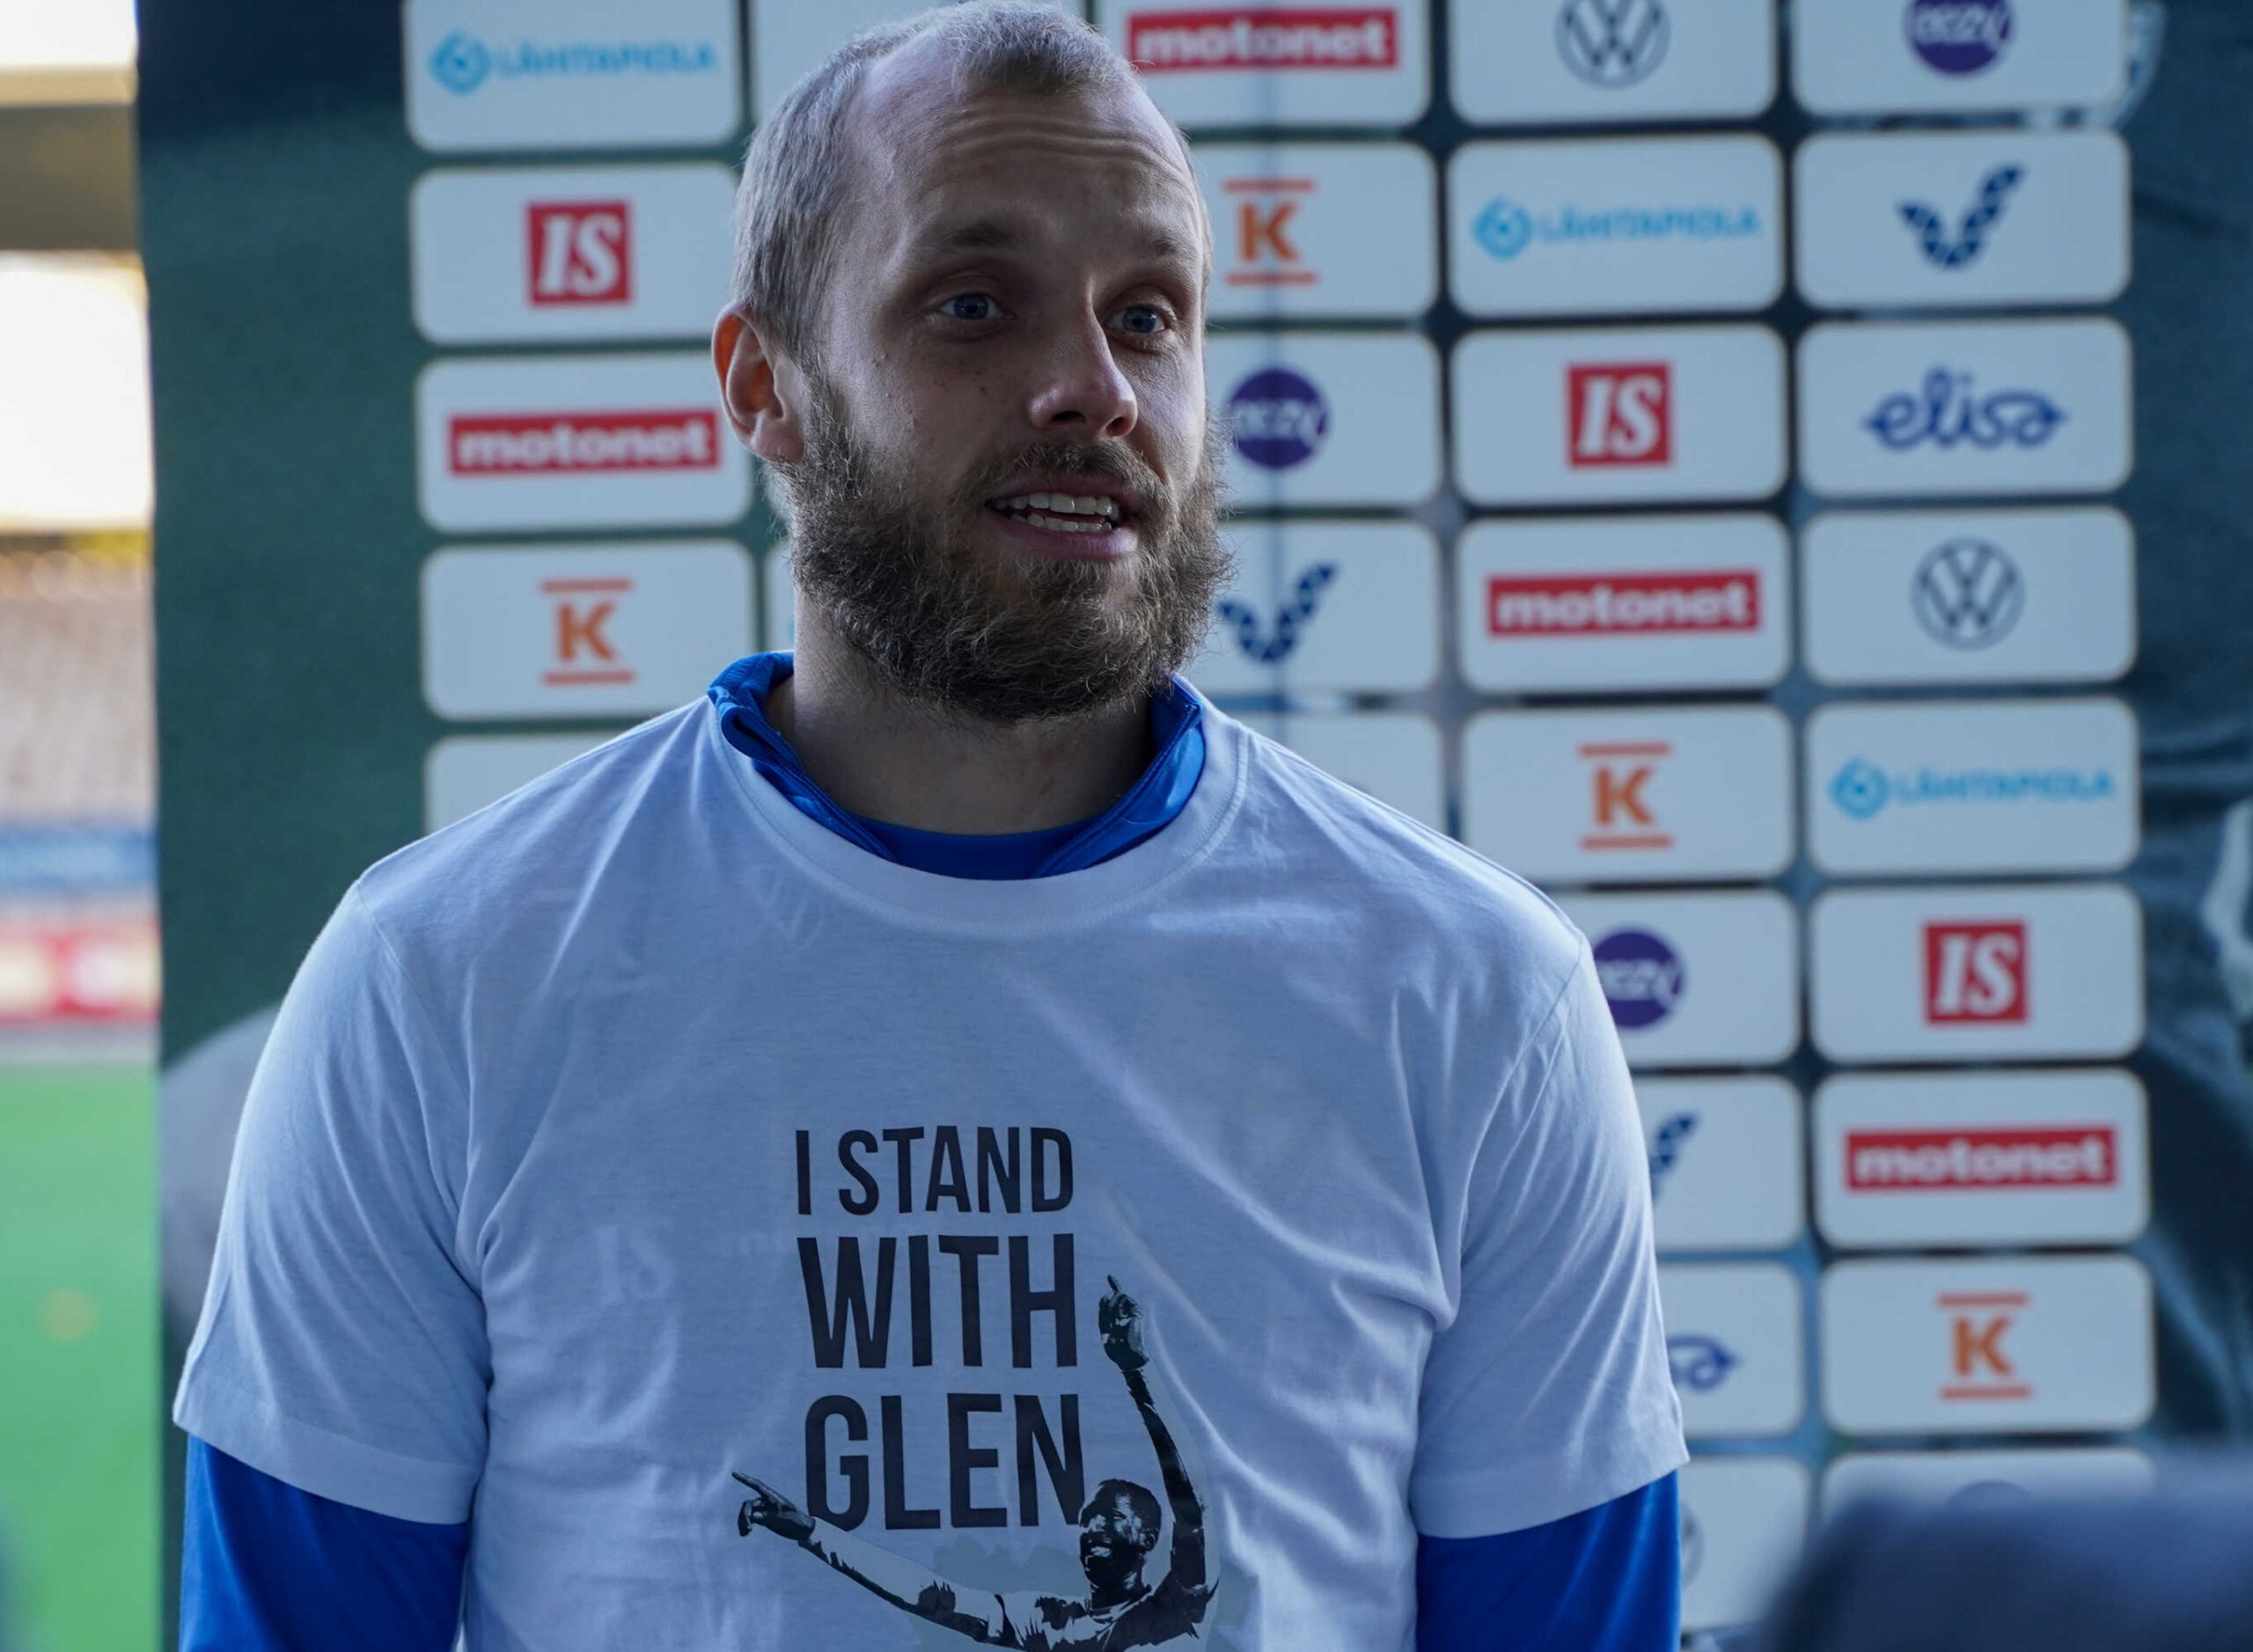 Photo – Finland players wear custom t-shirts in support of Glen Kamara